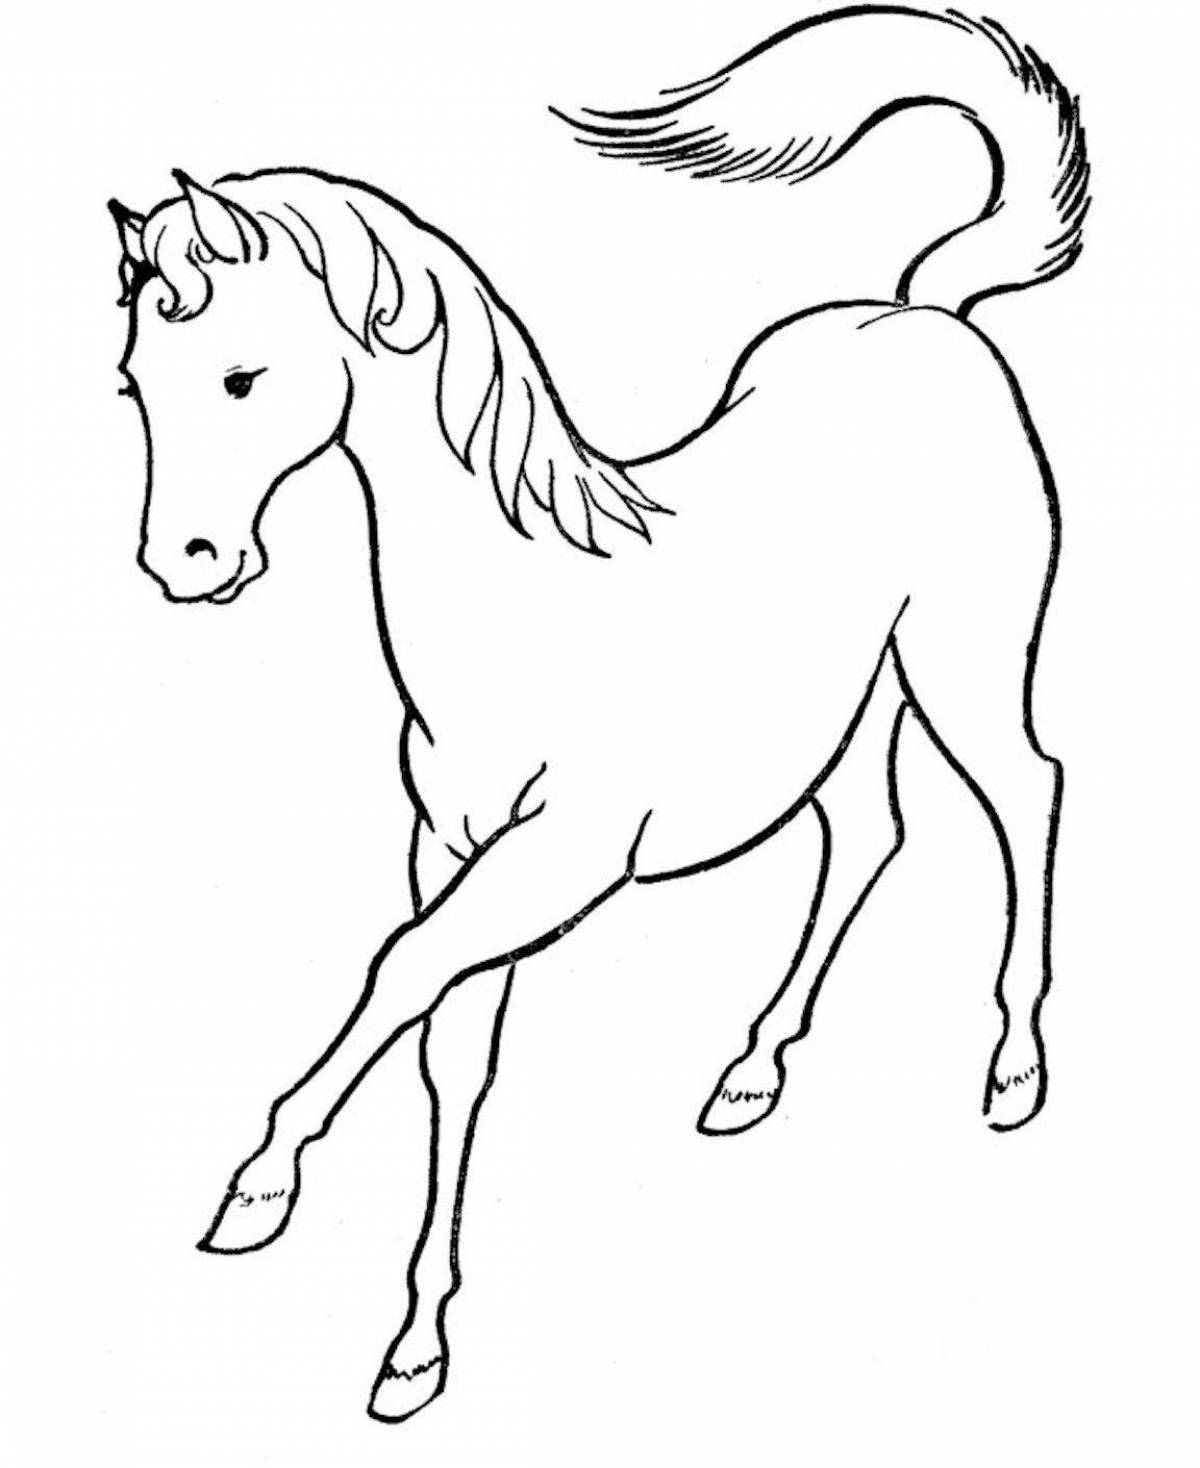 Раскрашиваем лошадку. Раскраска. Лошадка. Лошадка раскраска для детей. Рисунок лошади для раскрашивания. Лошадь раскраска для детей.